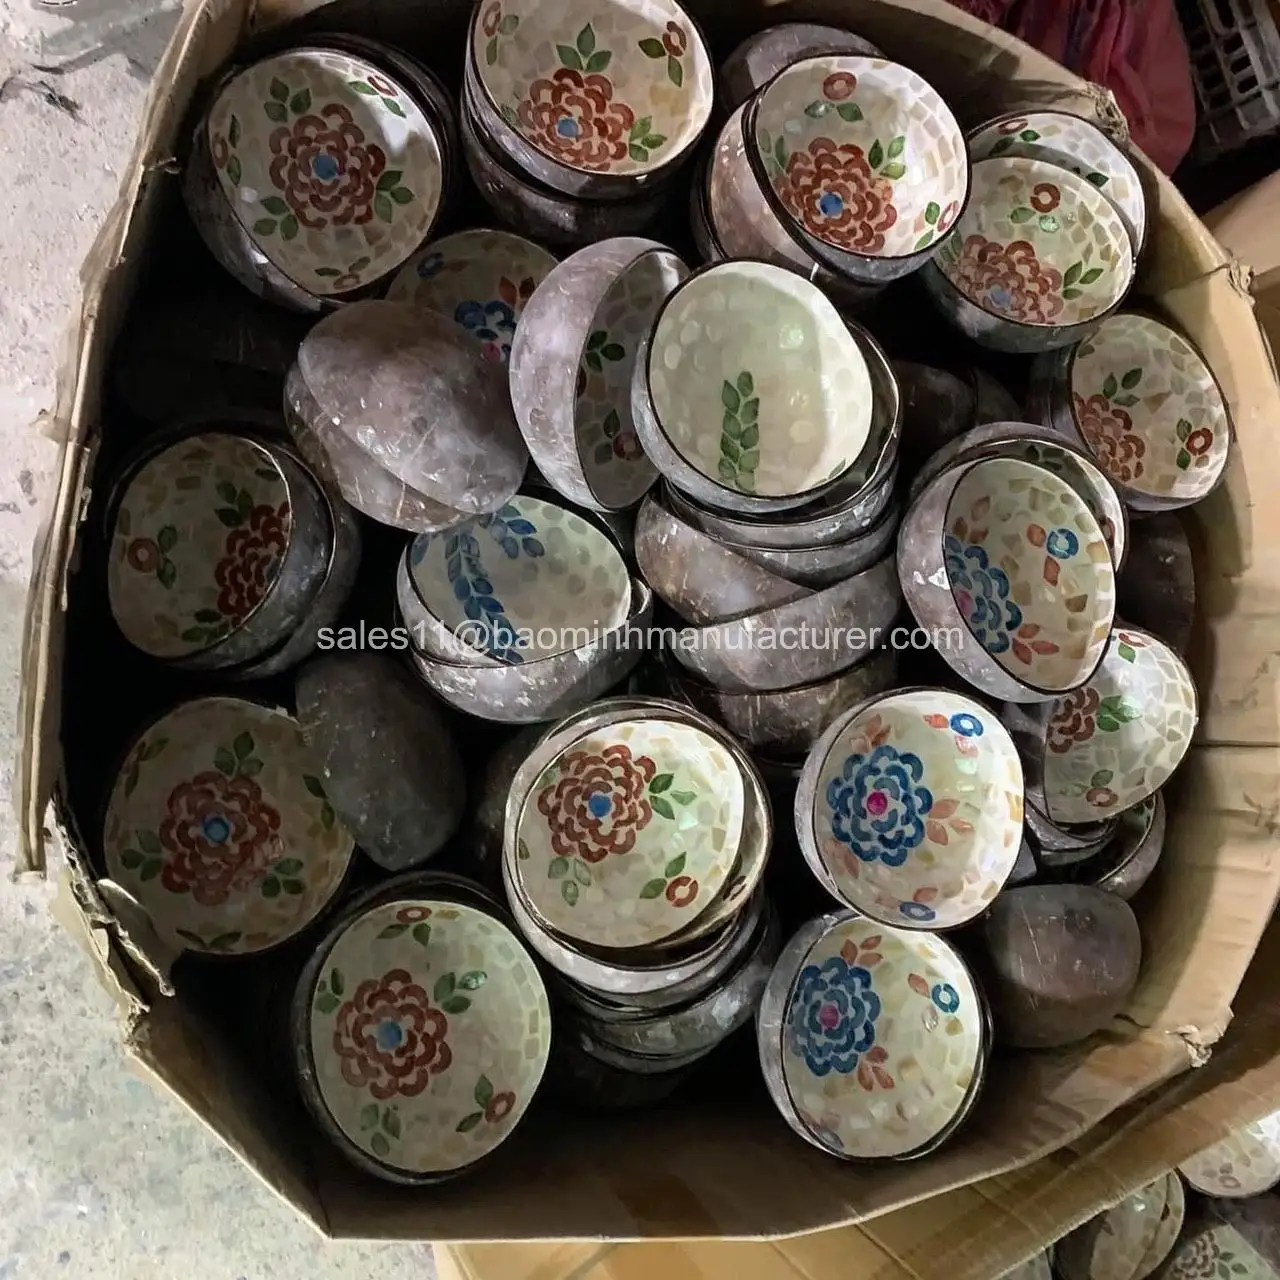 Cuenco de coco SeaShell con diseño vintage ecológico natural, cuencos de cáscara de coco vietnamita, pintura de laca de cuenco de coco